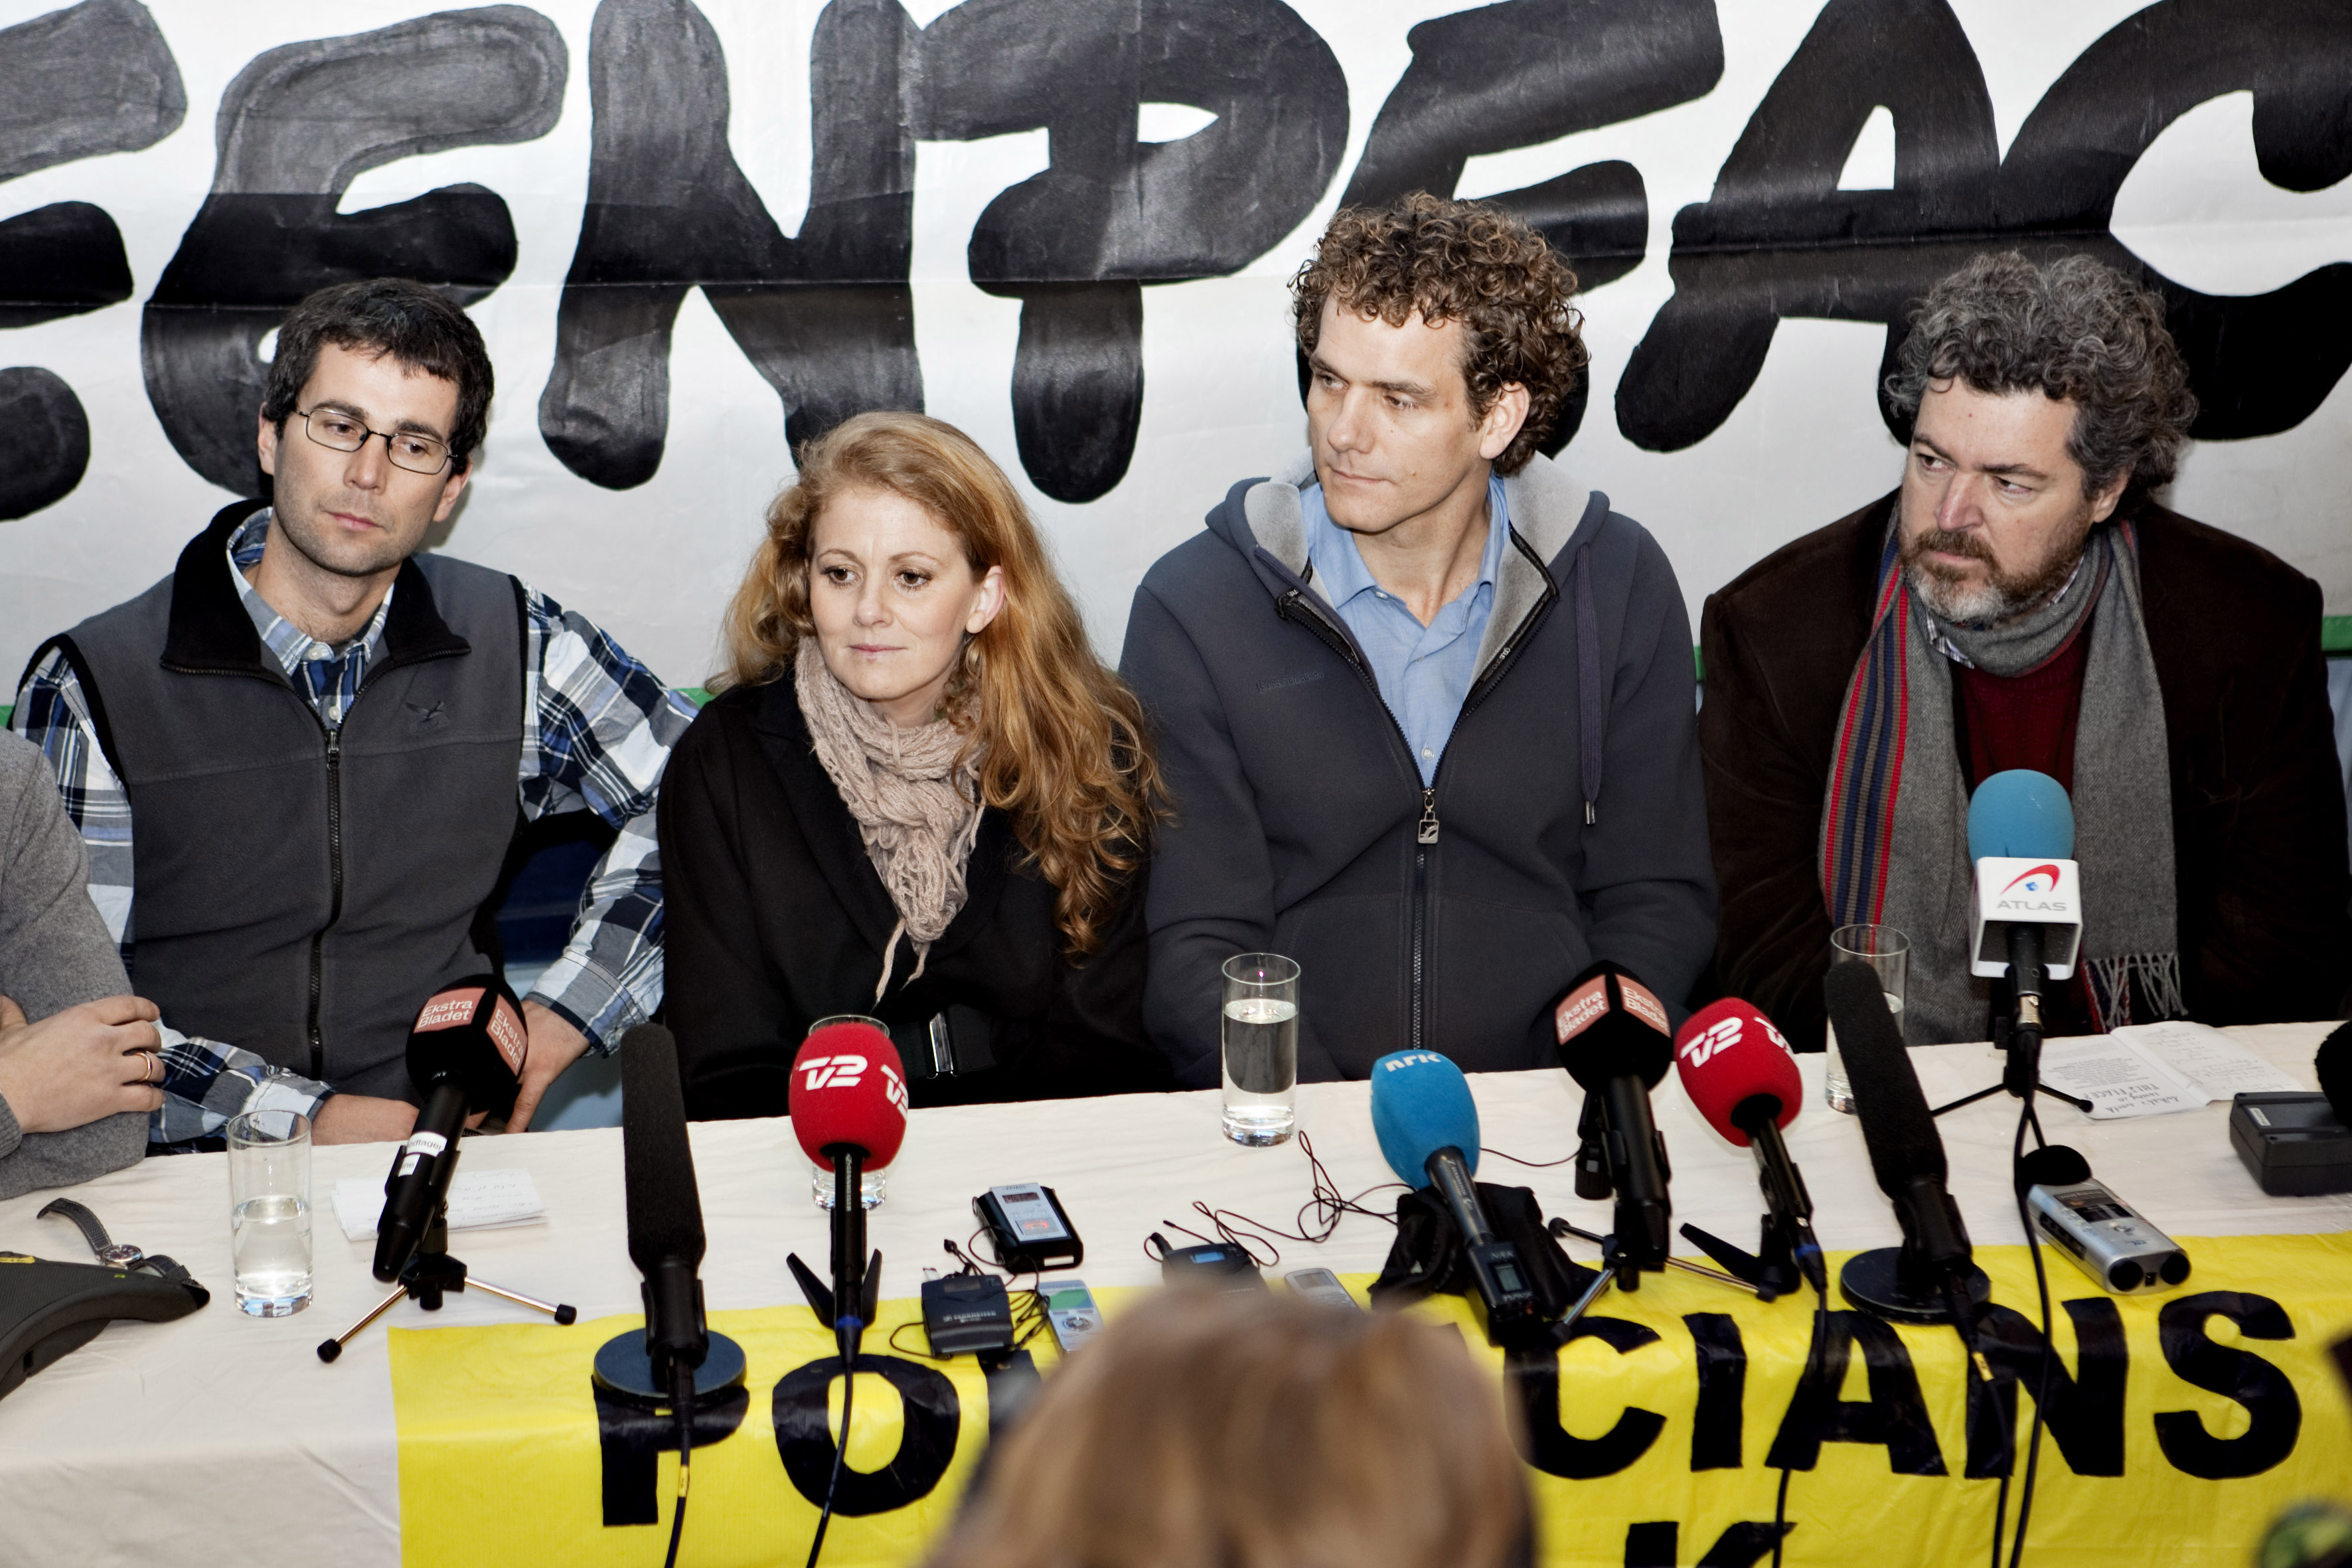 Copenhagen, Aktivister, Limousin, Greenpeace, Danmark, Inbrott, Kravaller, Klimat